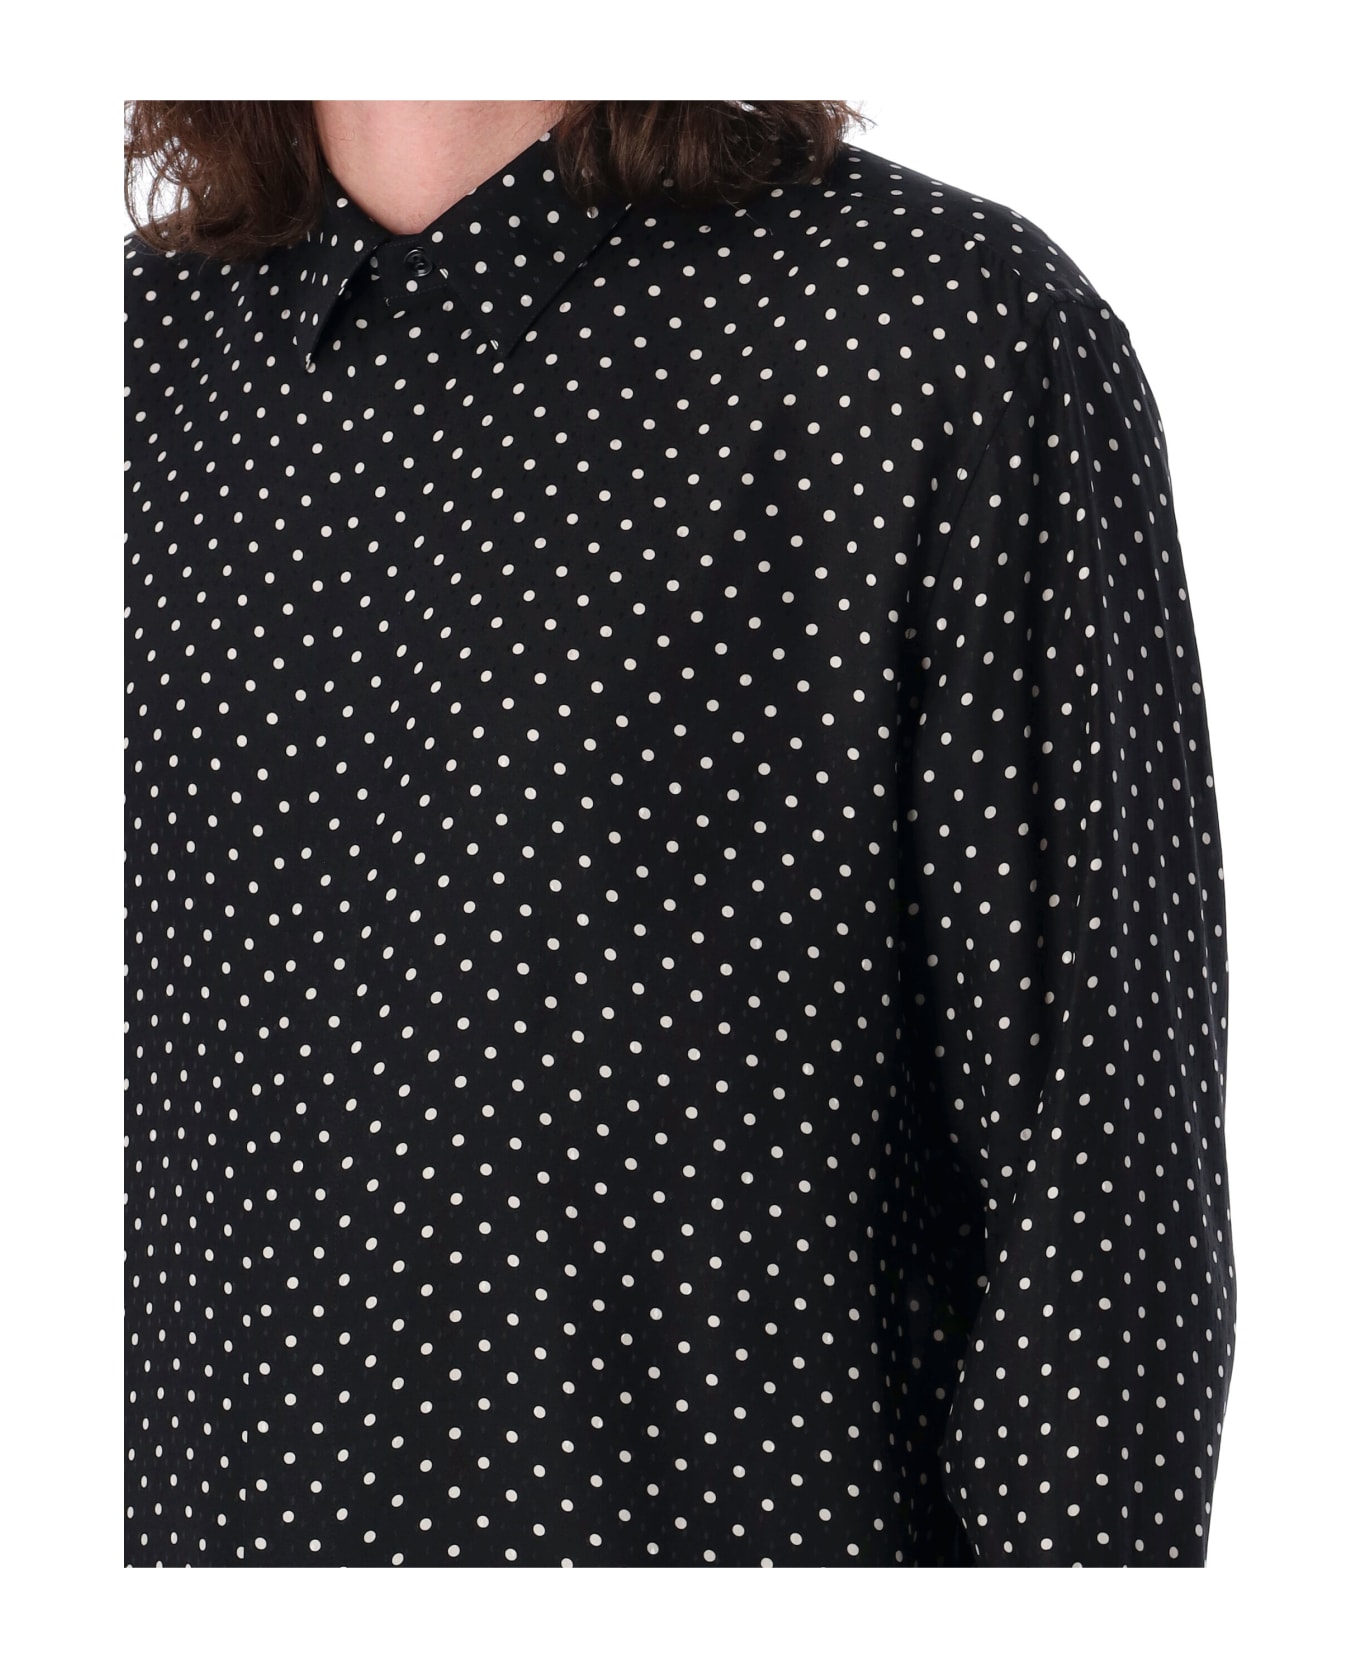 Saint Laurent Dotted Shirt - BLACK CRAIE シャツ